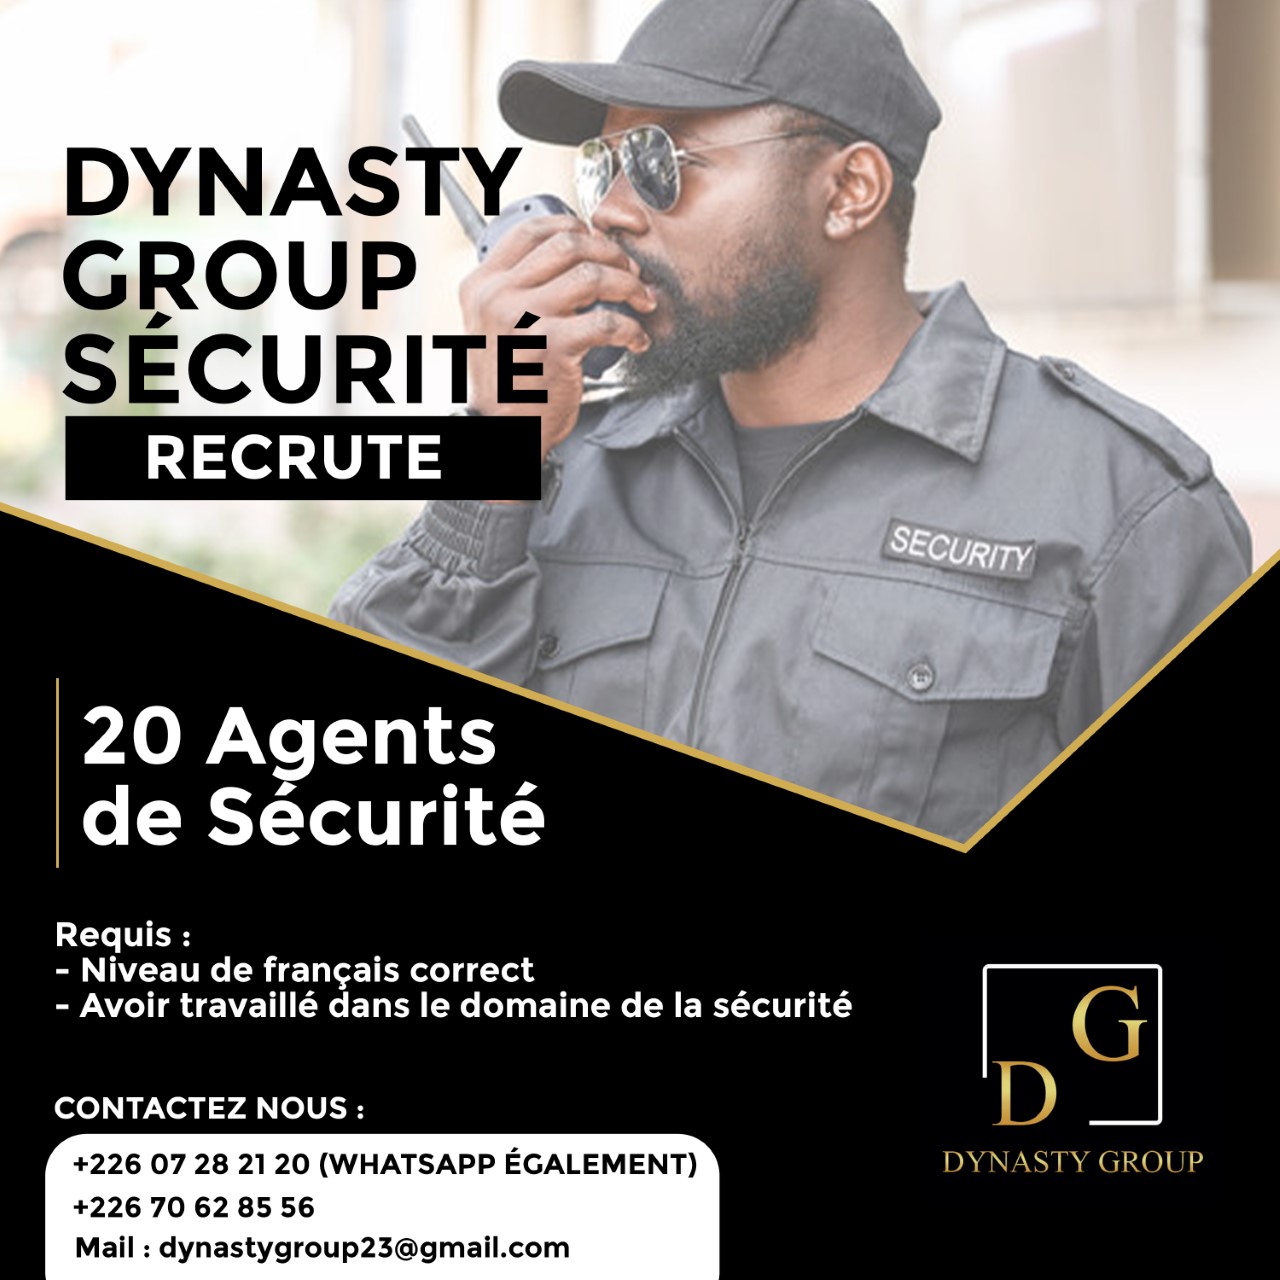 DYNASTY GROUP recrute vingt (20) agents de sécurité et un Directeur technique